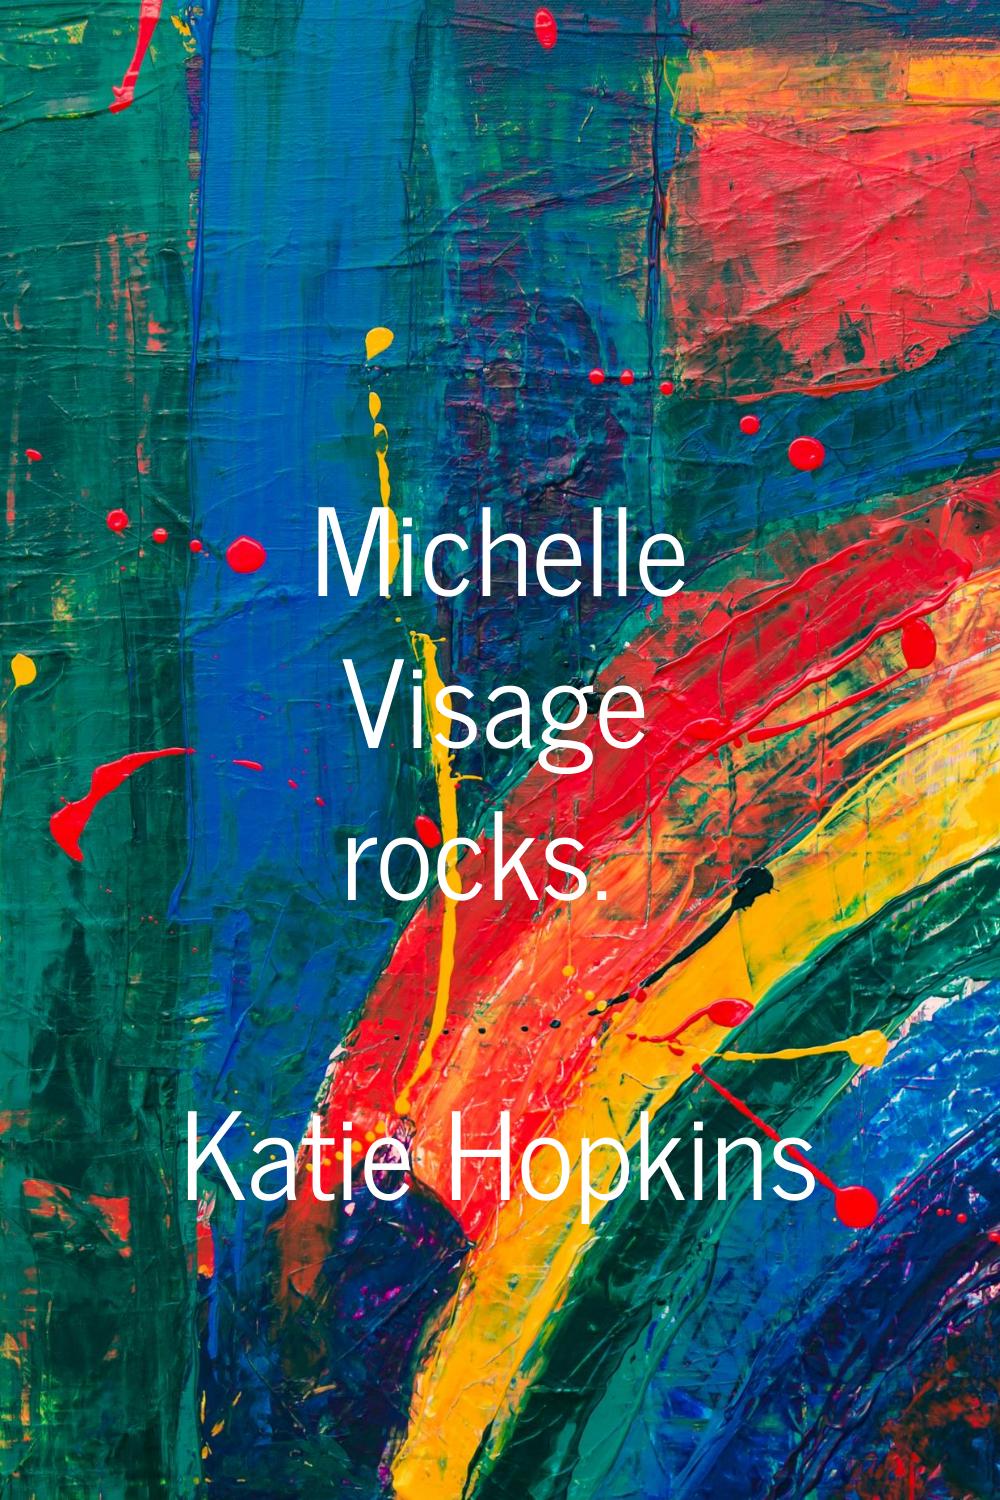 Michelle Visage rocks.